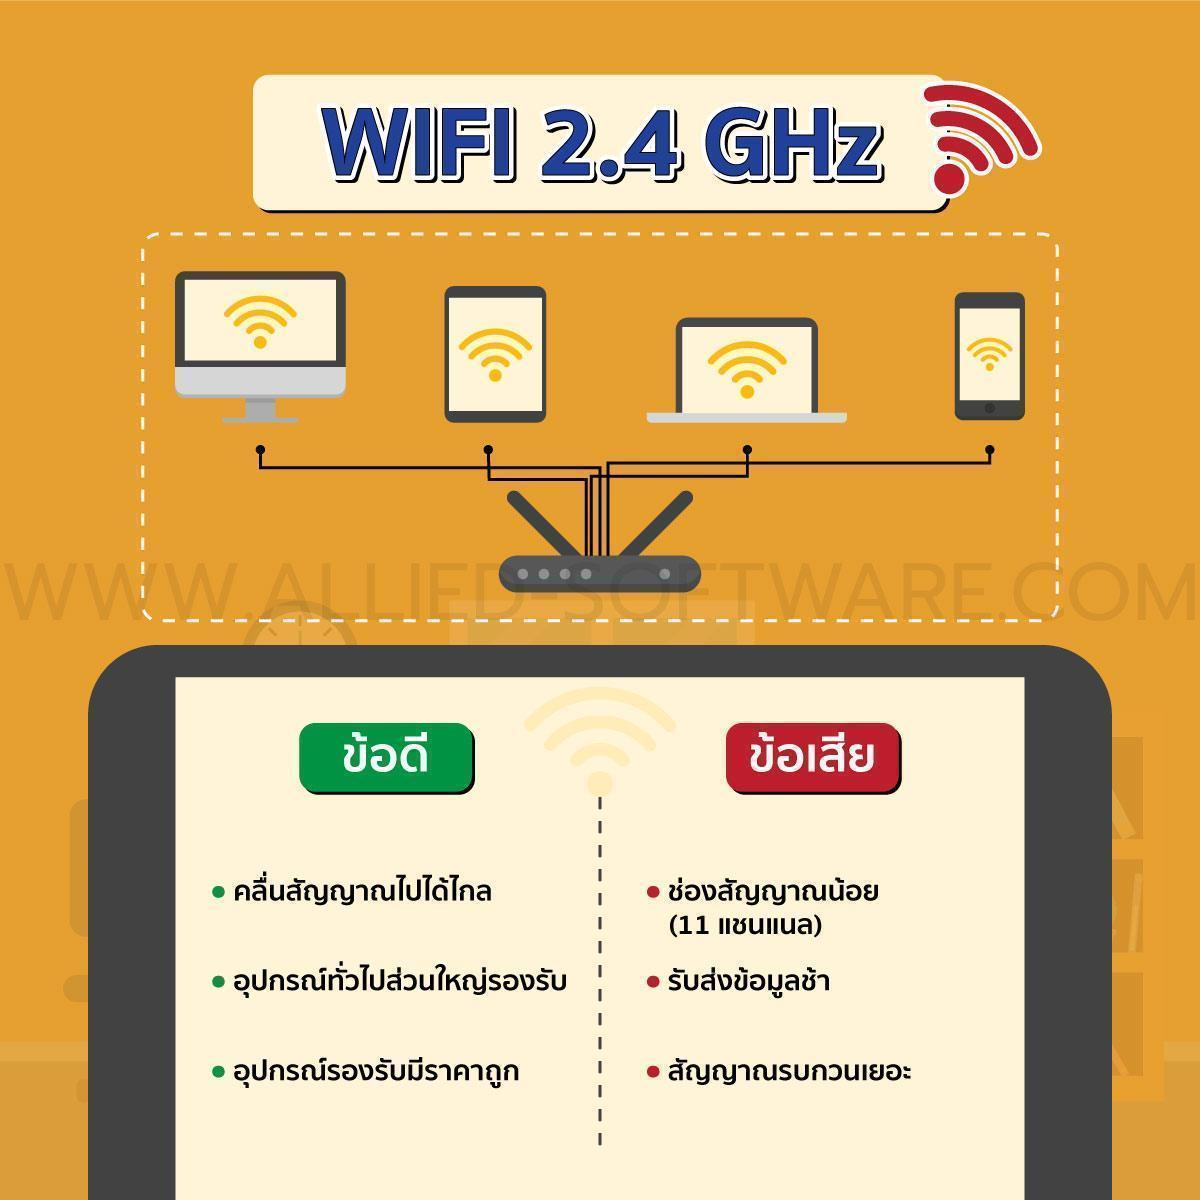 wifi 2.4 vs 5